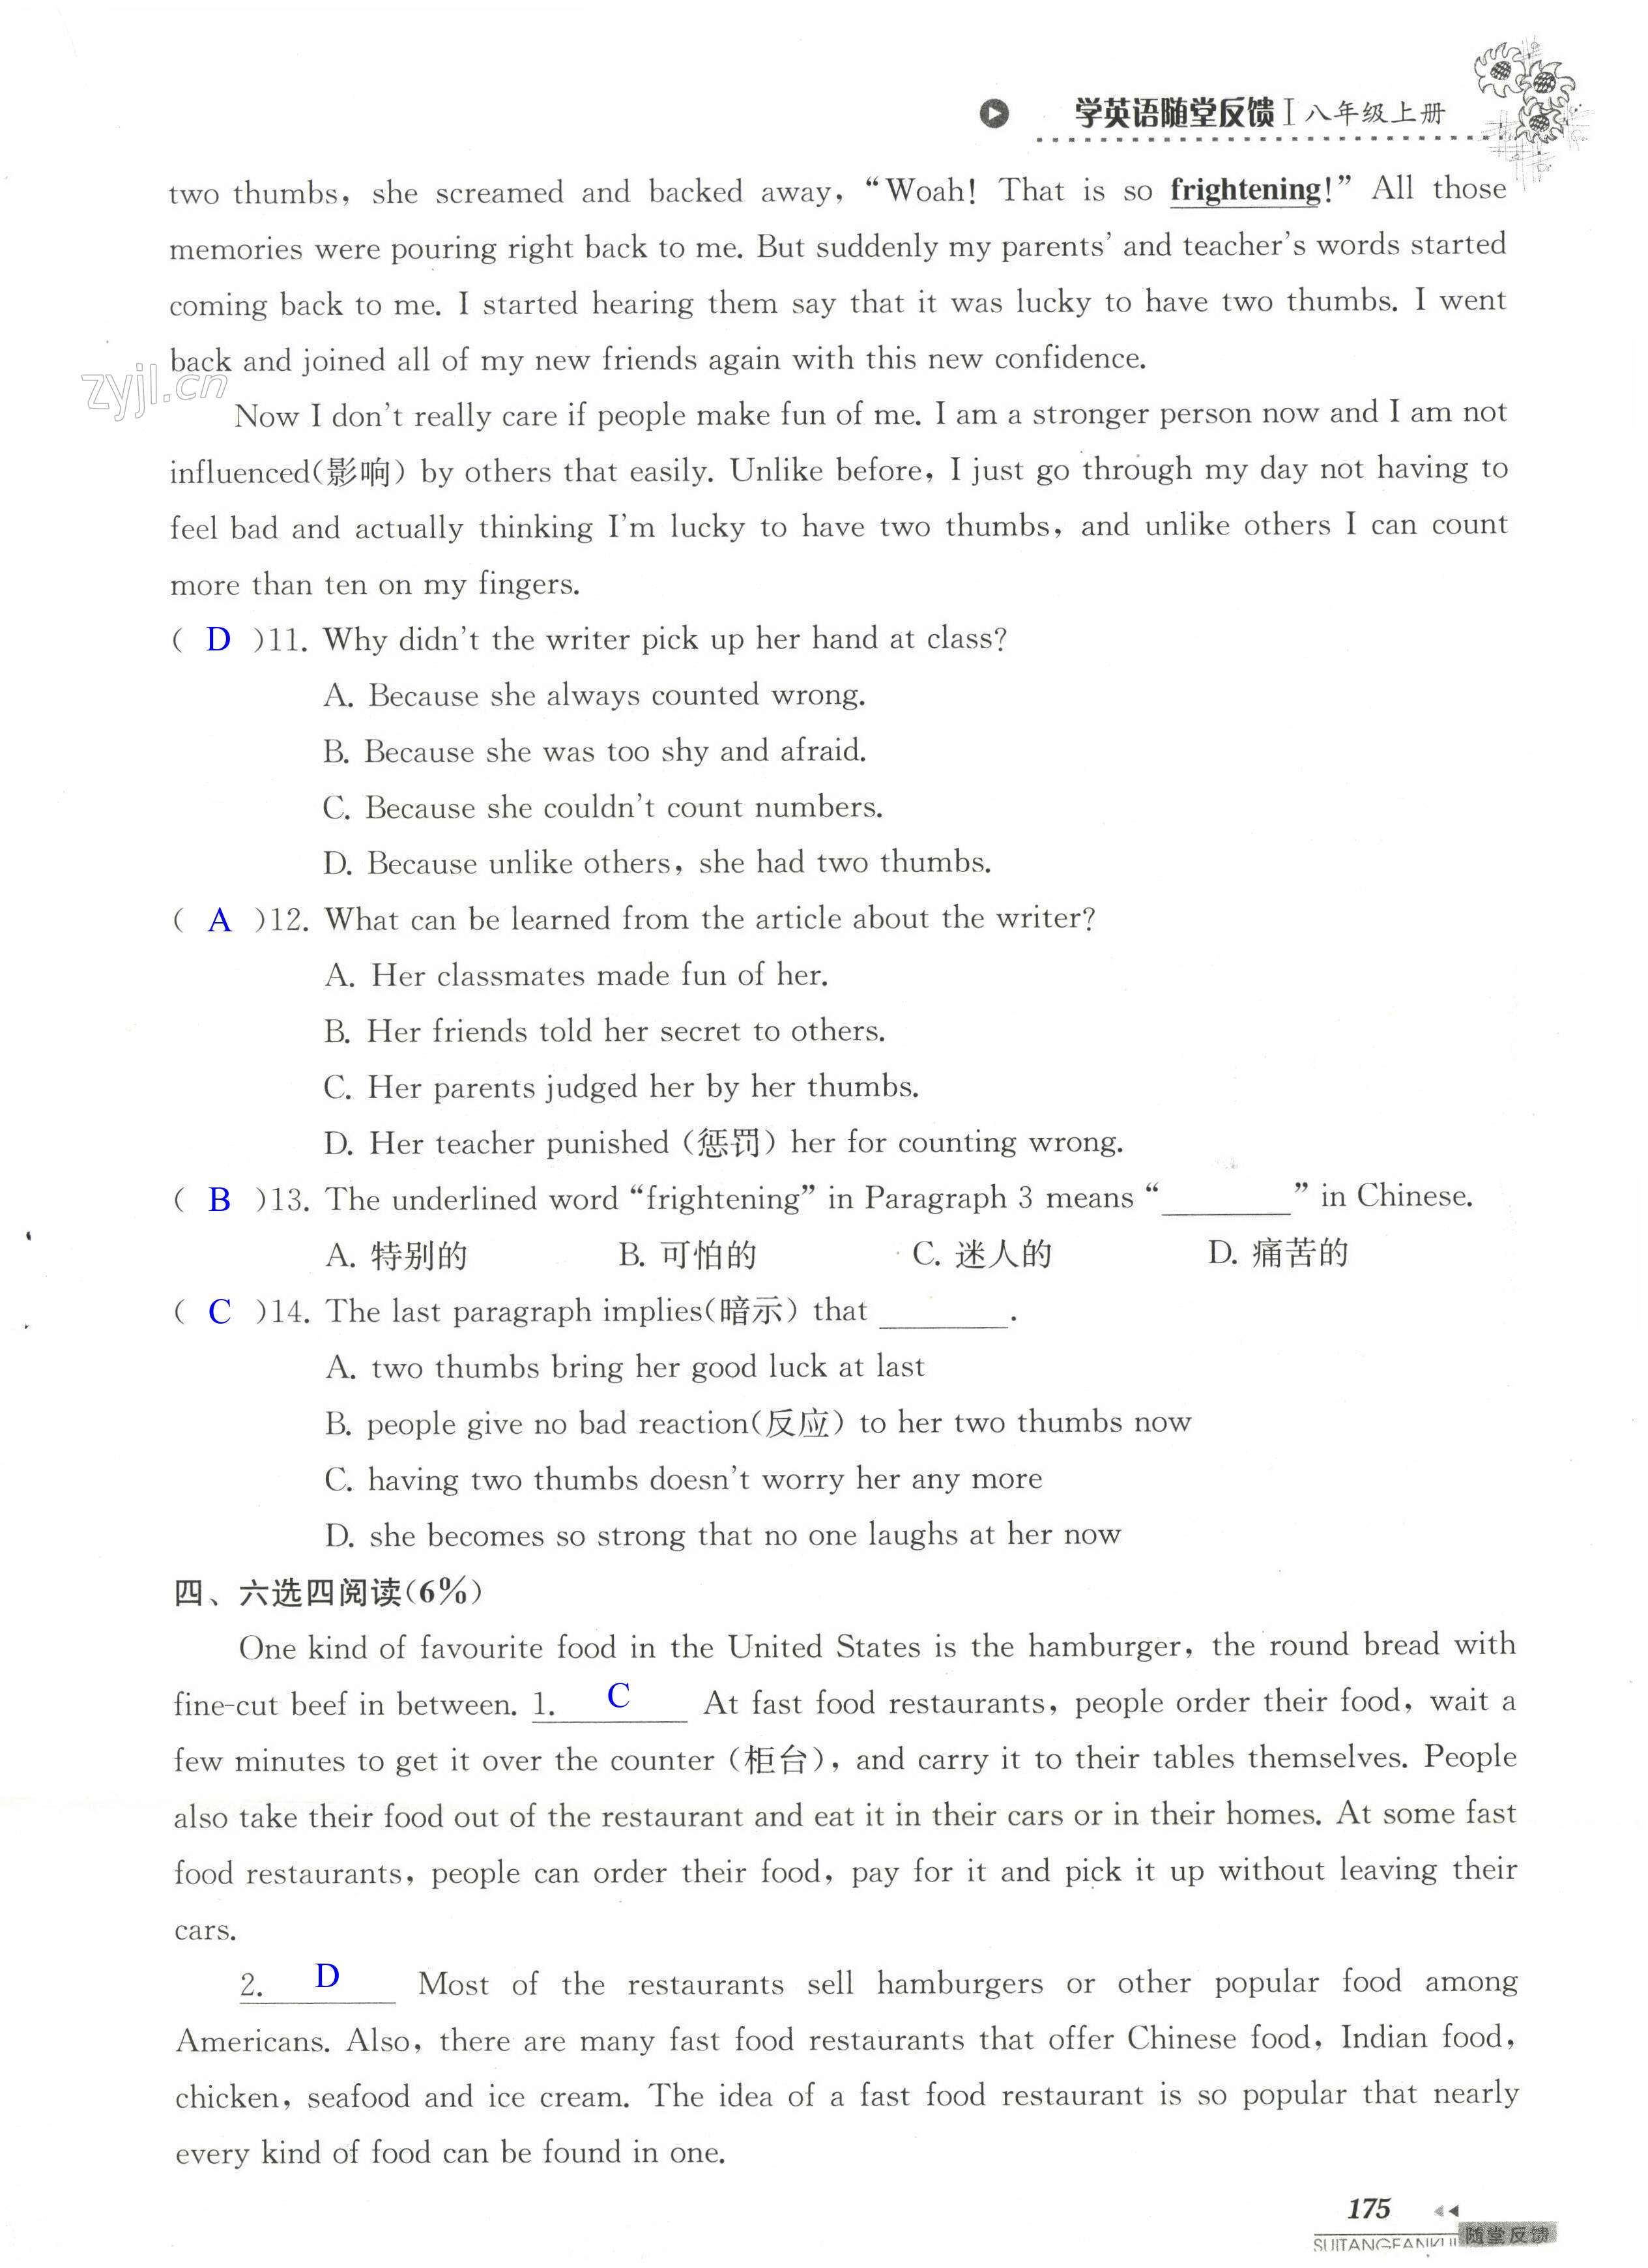 单元综合测试卷 Test for Unit 4 of 8A - 第175页